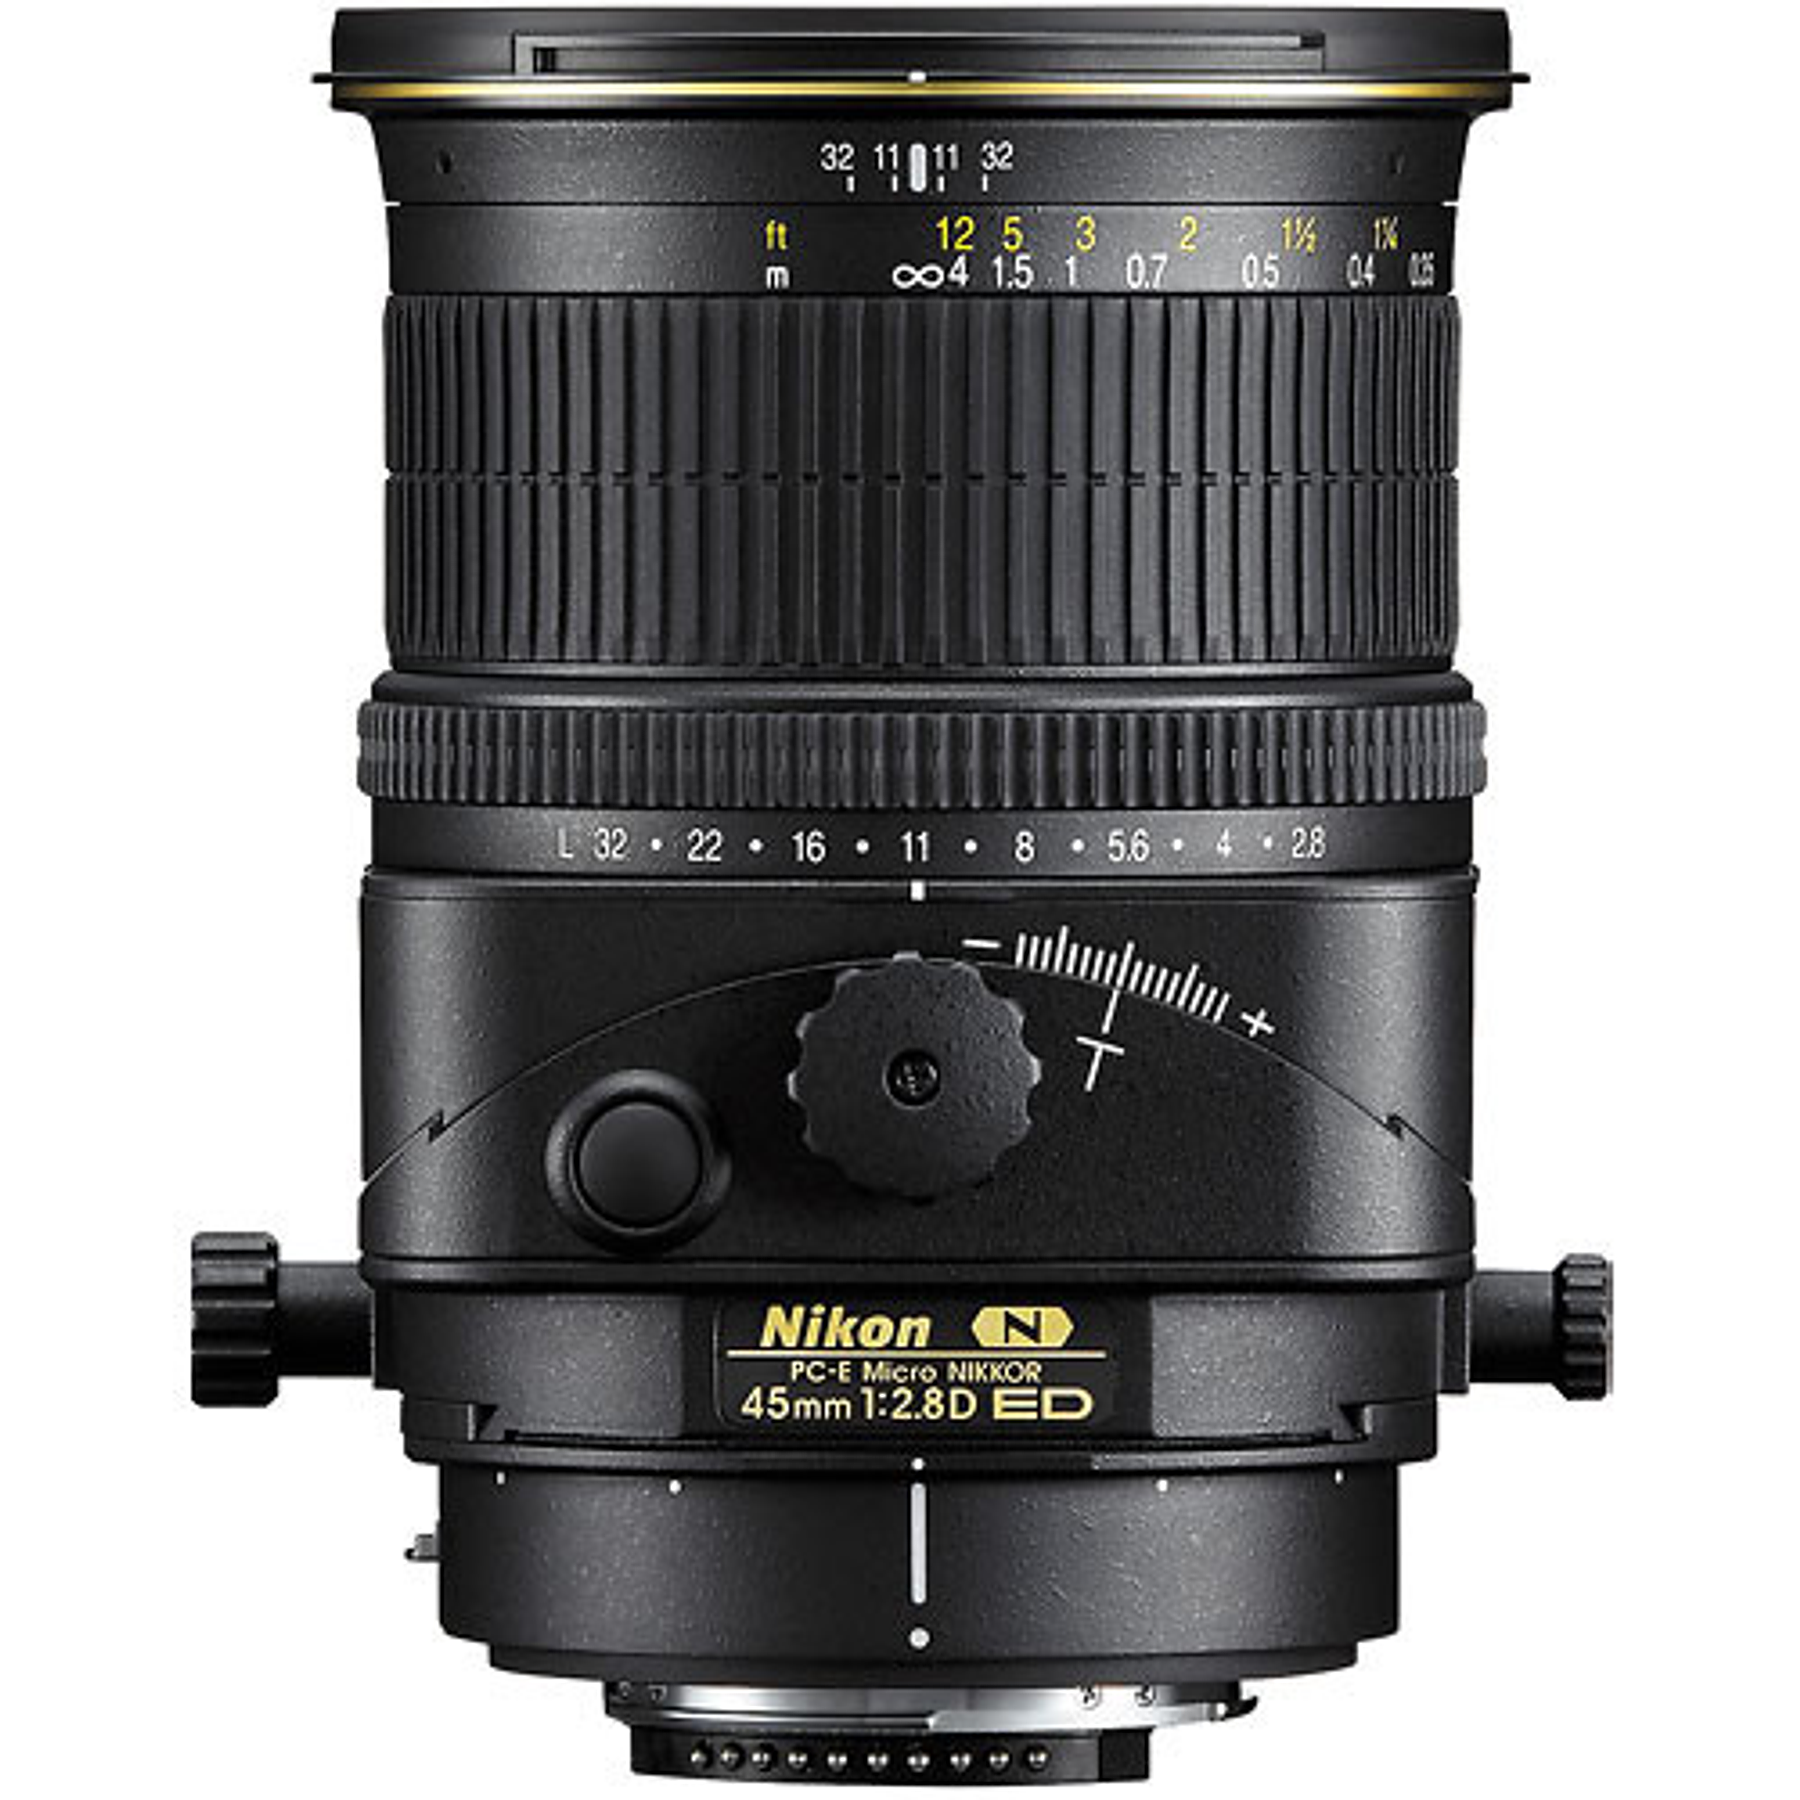 Nikon F PC-E 45mm f2.8D ED Tilt-Shift